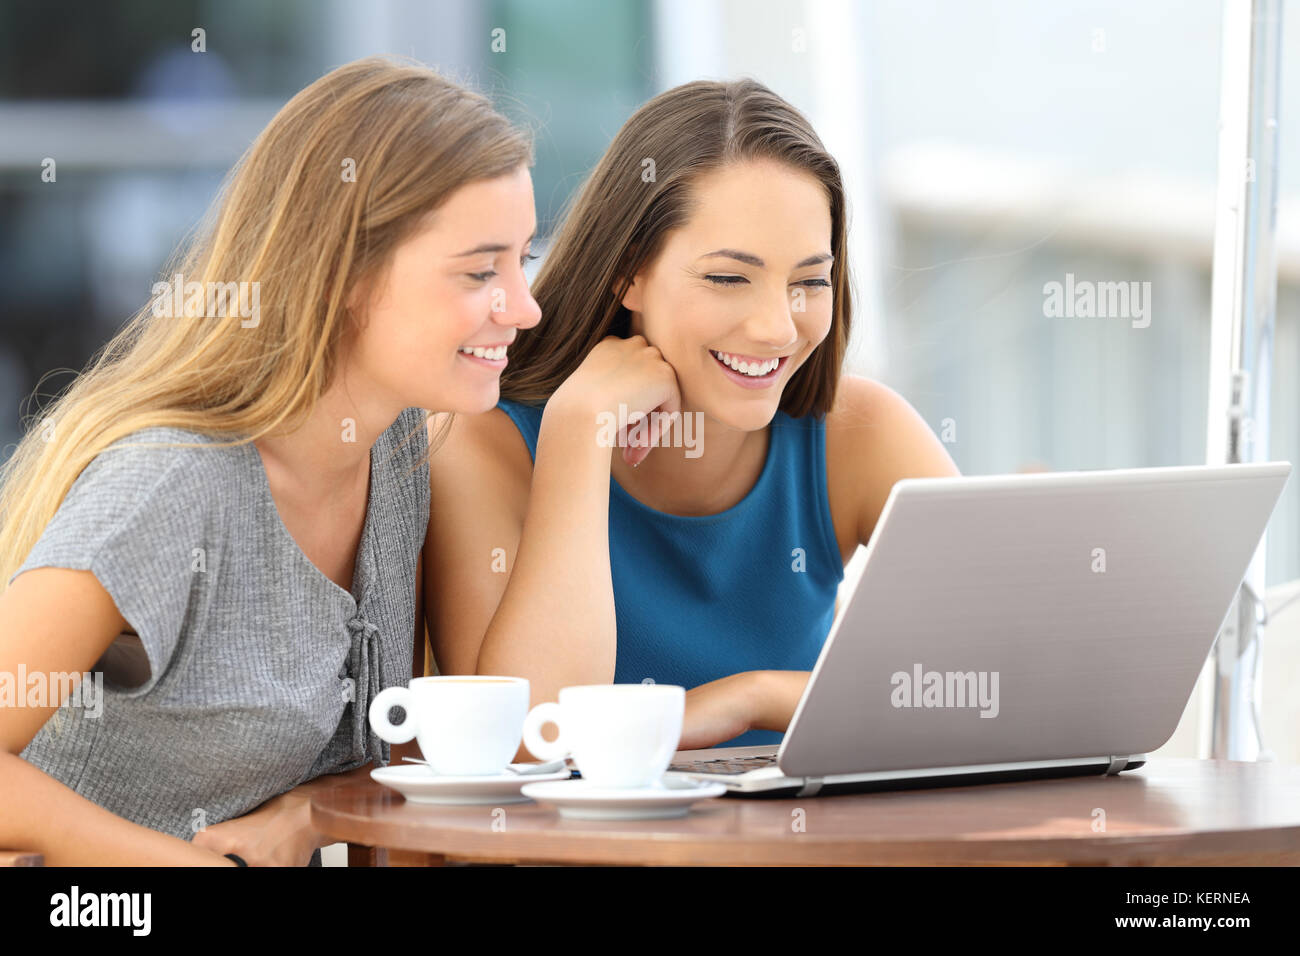 Deux amis heureux regardant le contenu diffusé en ligne dans un ordinateur portable assis dans un bar terrasse Banque D'Images